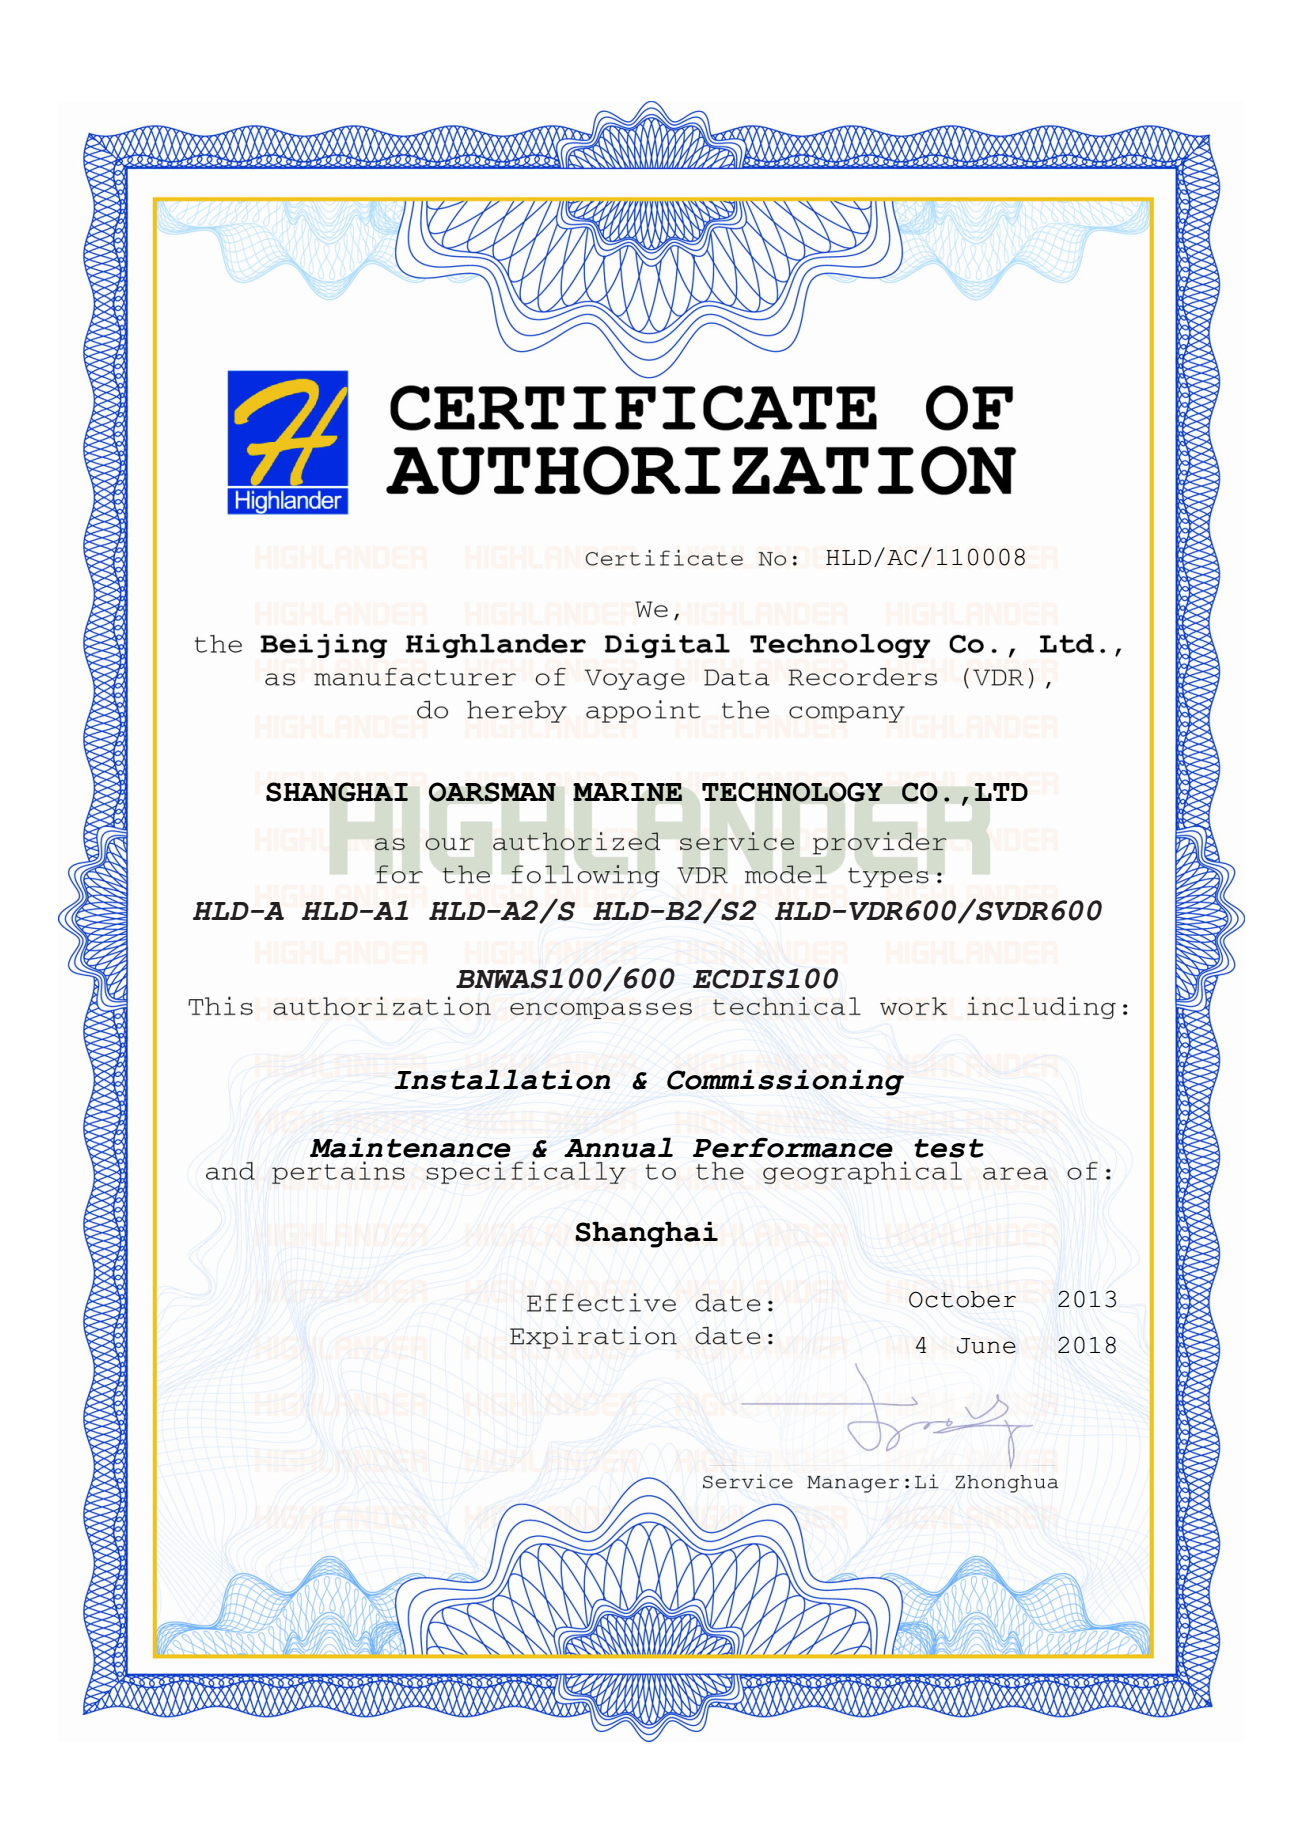 Highlander Certificate